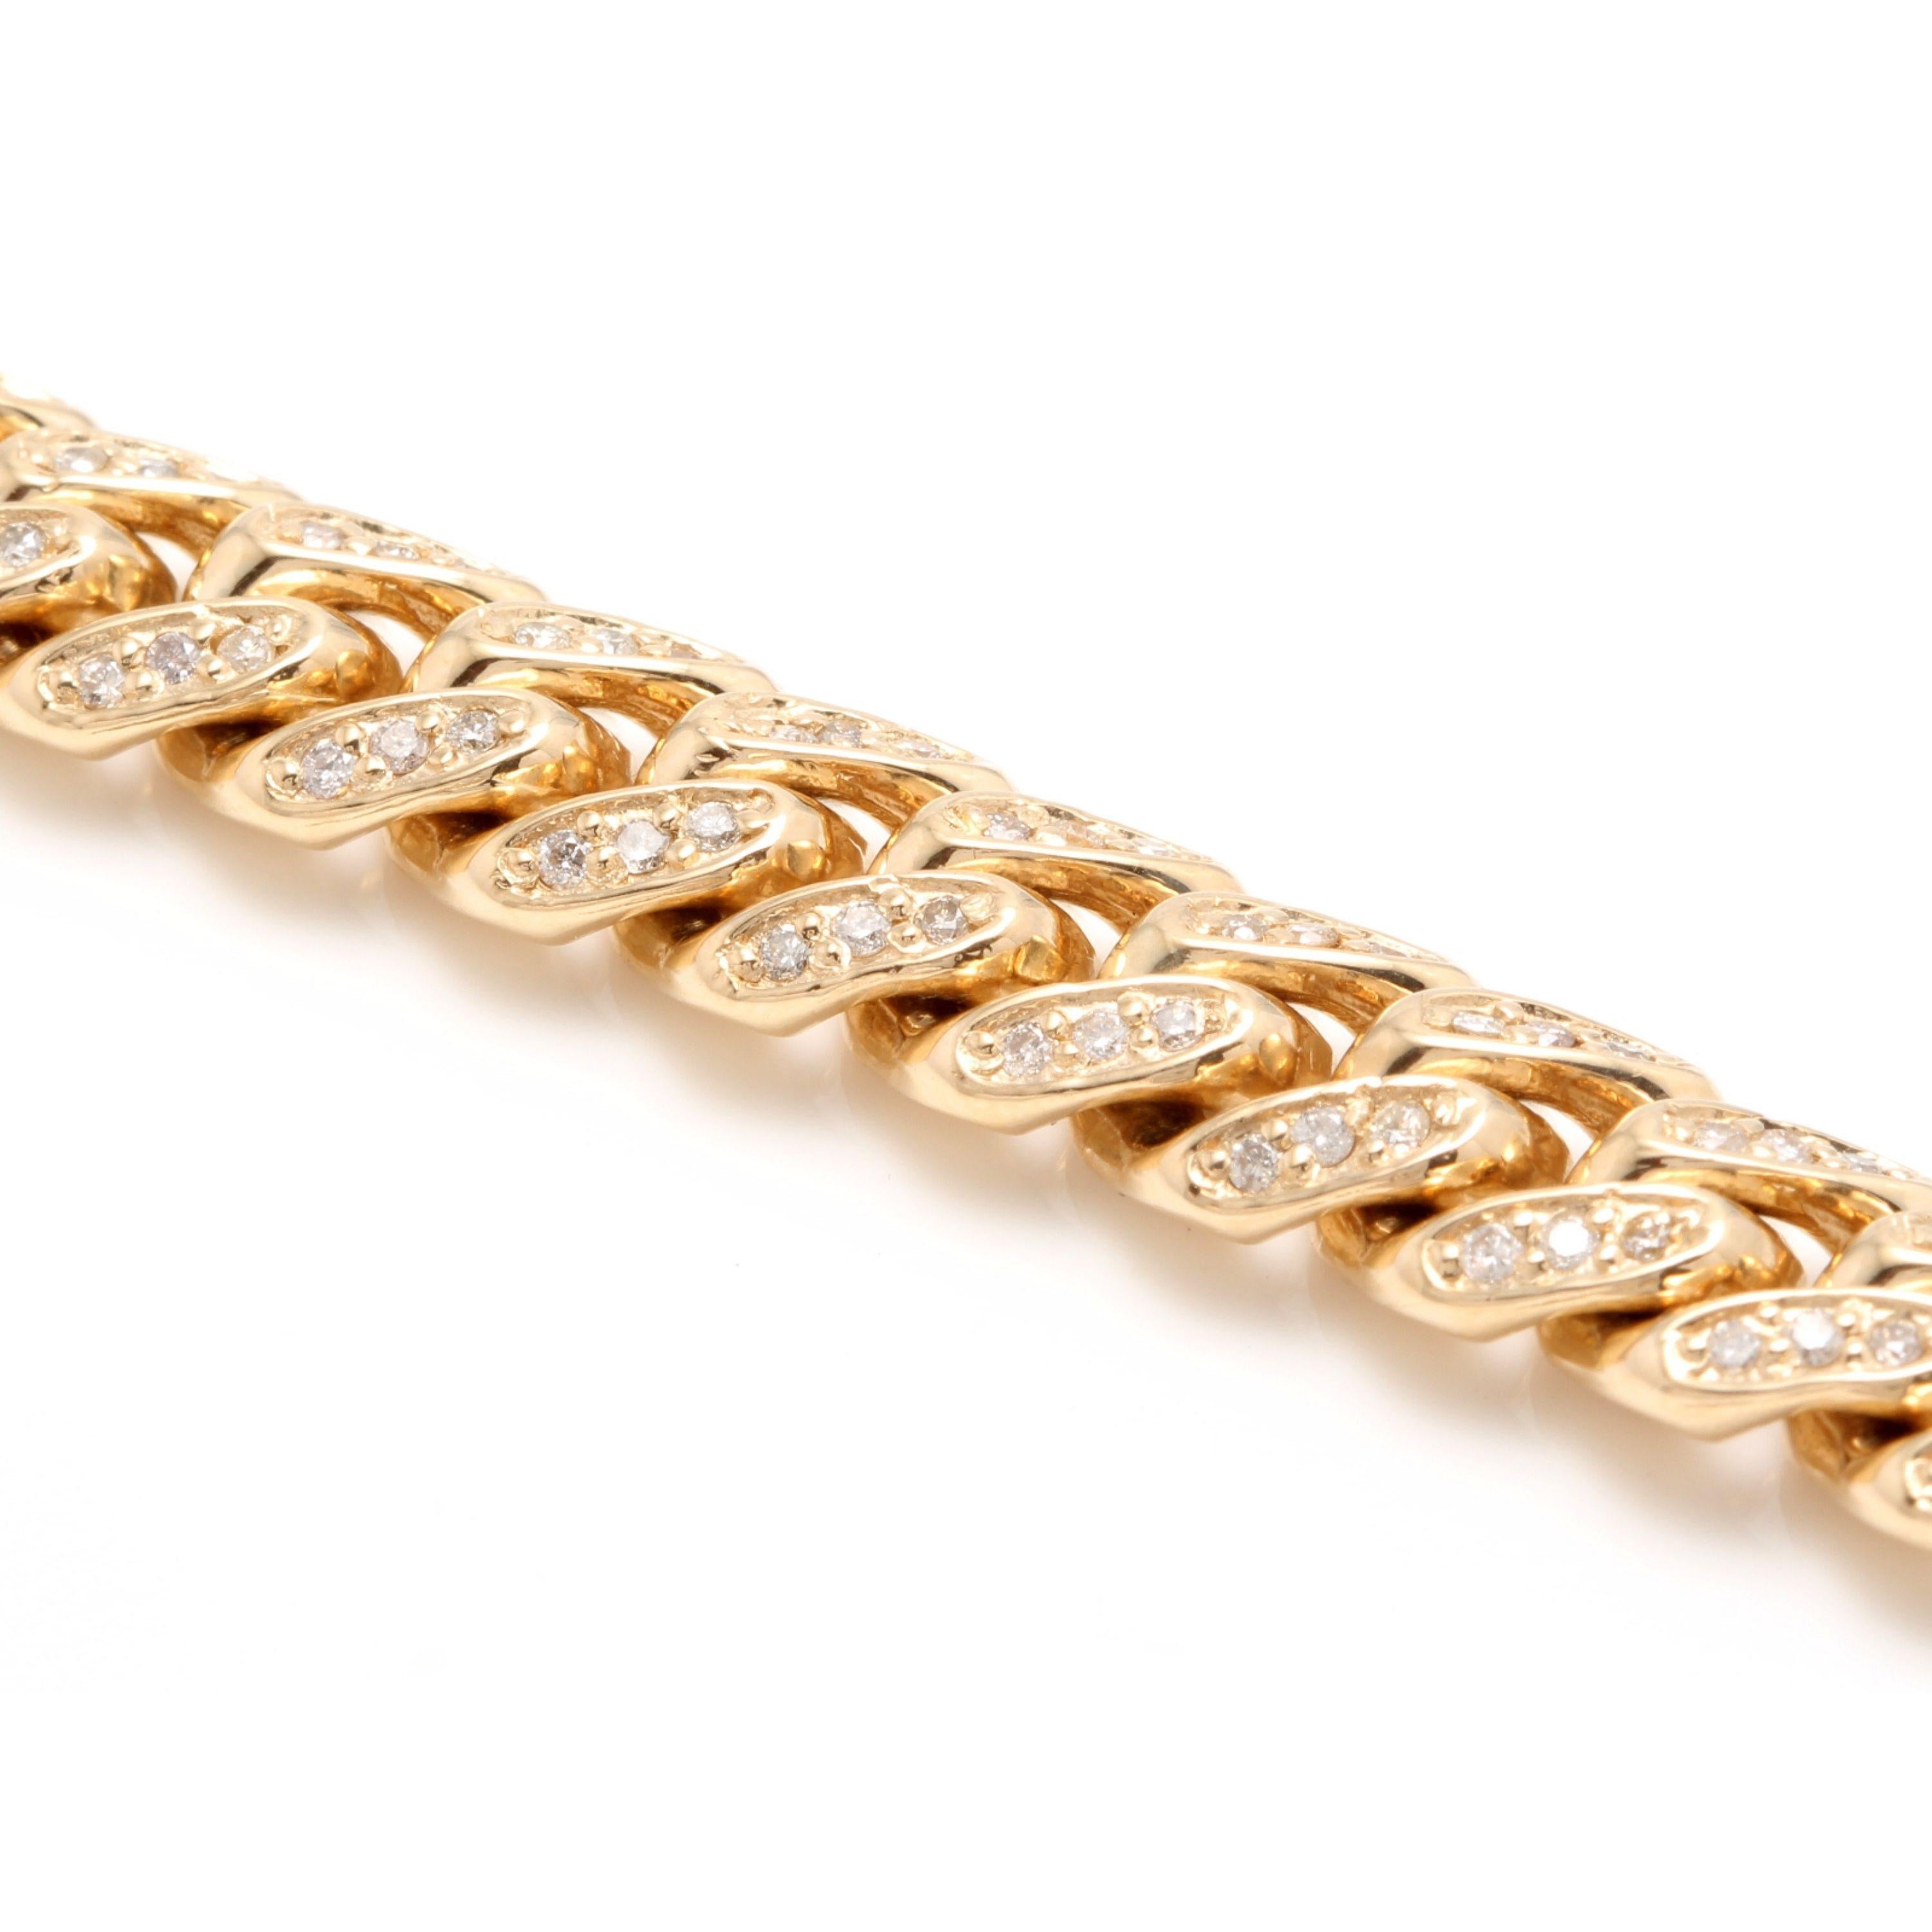 Sehr beeindruckende 6,00 Karat natürlichen Diamanten 14K Solid Gelbgold Herren Miami kubanischen Link-Armband

GESTEMPELT: 14K

Total Natural Round Cut Diamanten Gewicht ist: Ca. 6,00 Karat (Farbe H-I / Reinheit SI1-SI2)

Armband Länge ist: 8,5